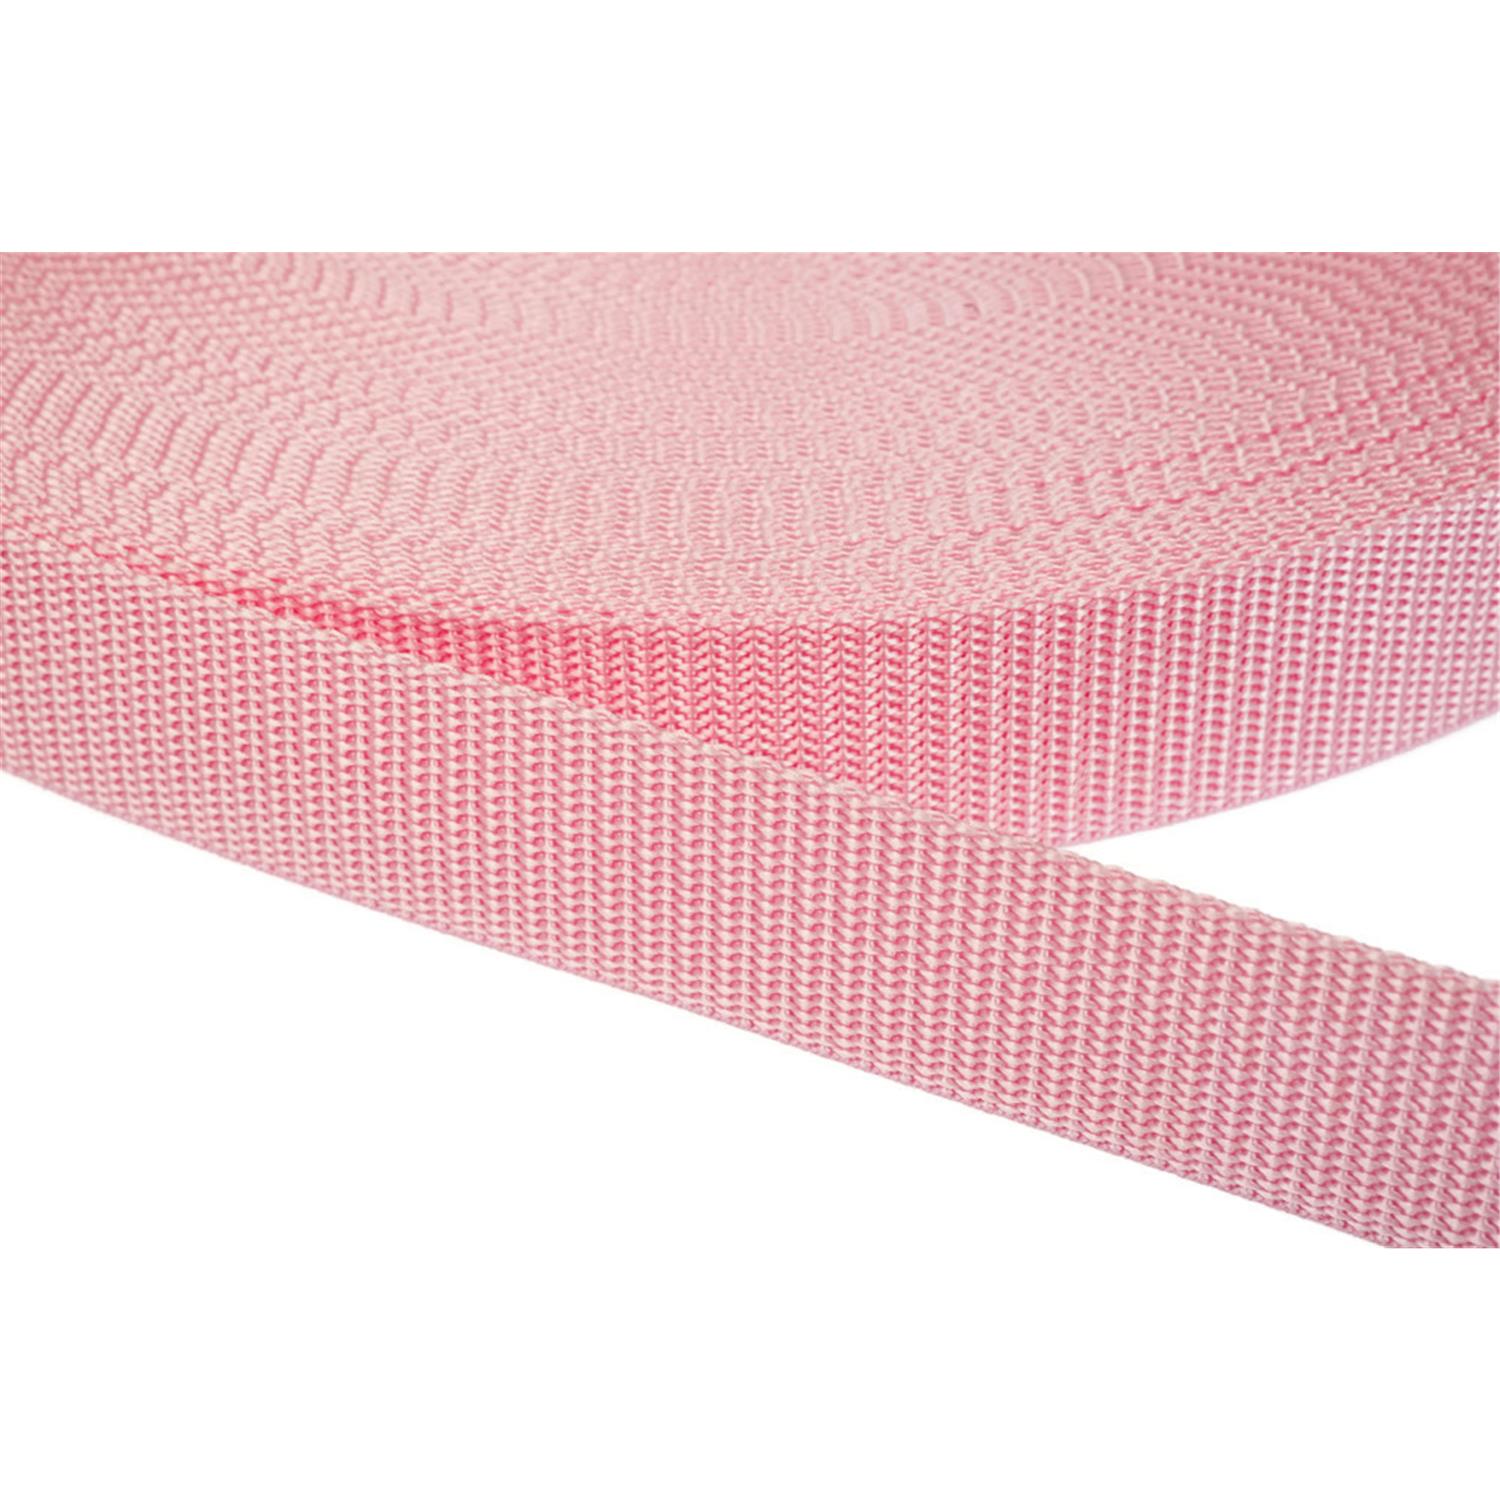 Gurtband 20mm breit aus Polypropylen in 41 Farben 12 - rosa 06 Meter